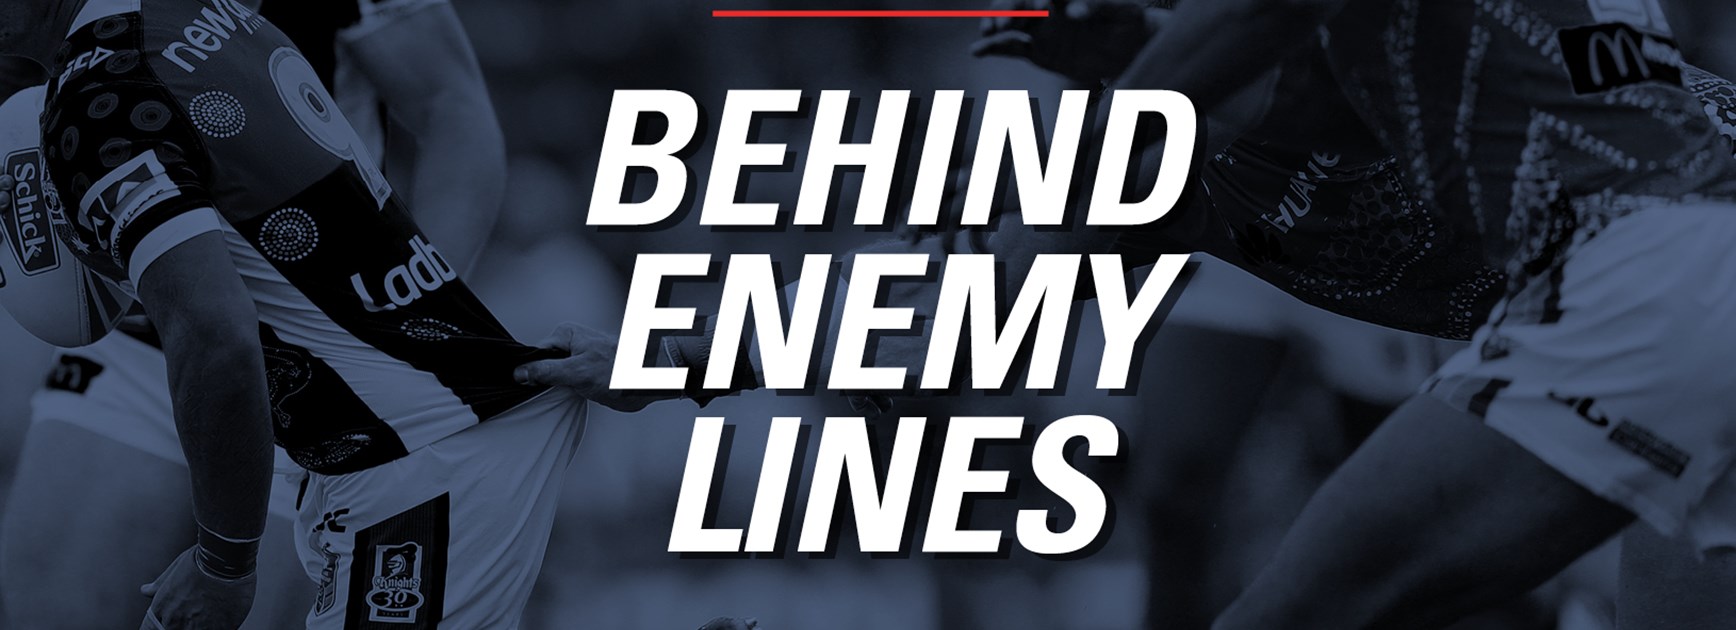 Behind enemy lines: Round 2